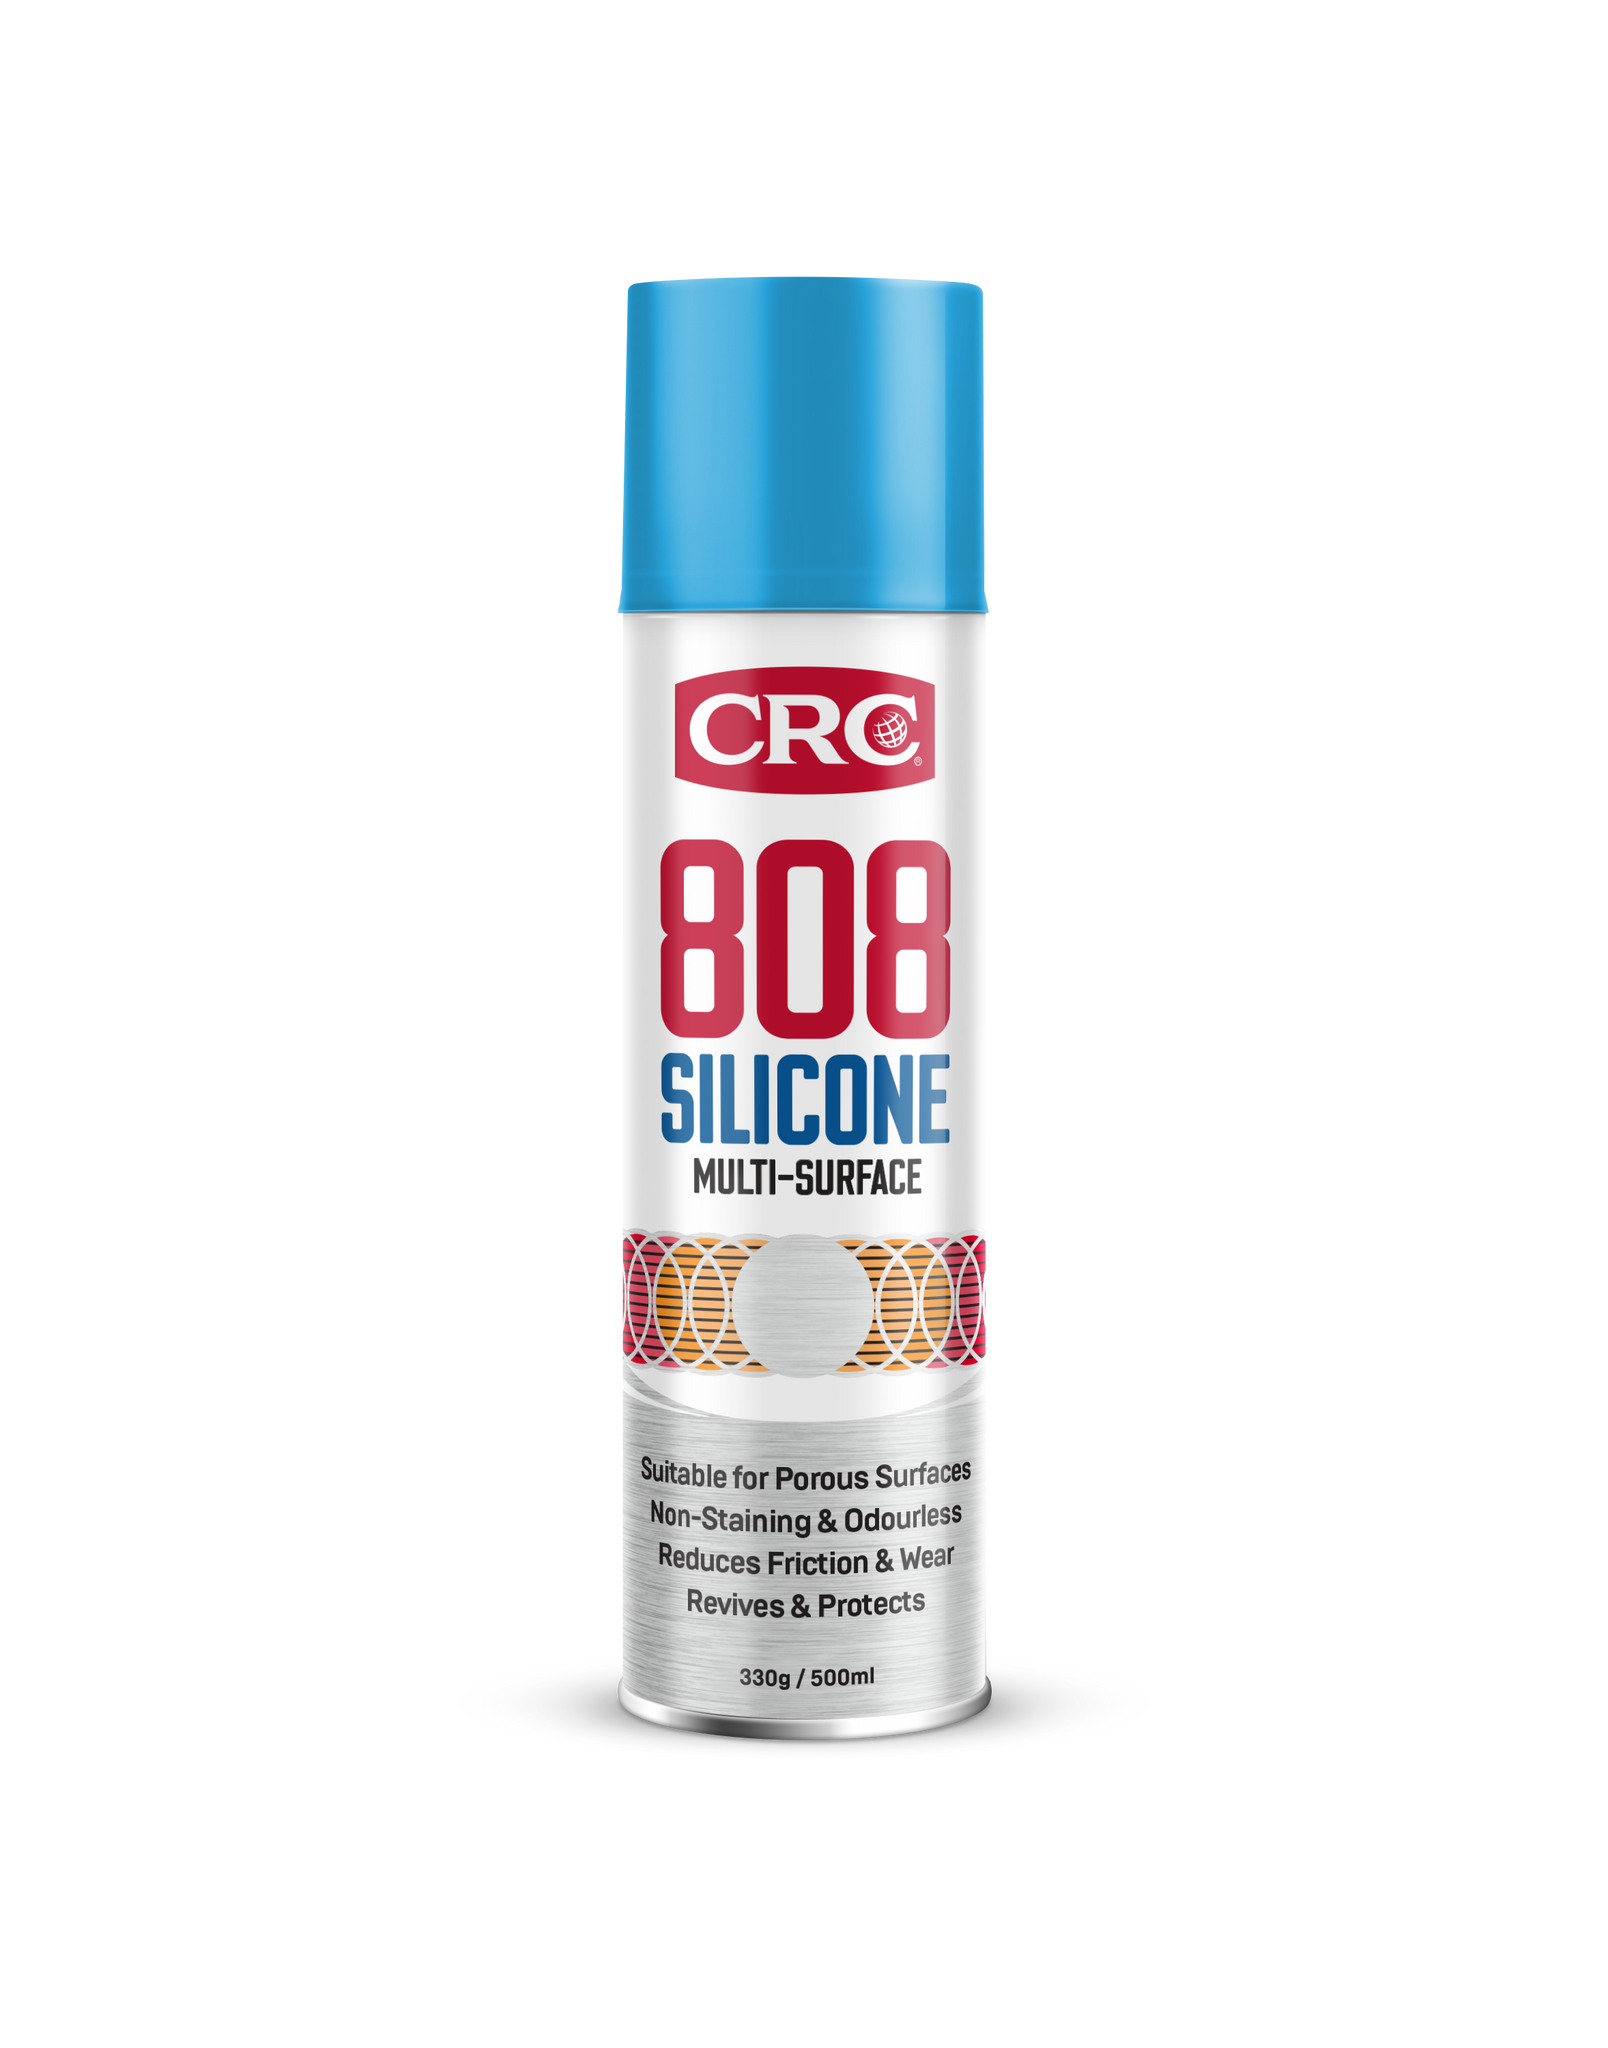 CRC Silicone Spray 500ml